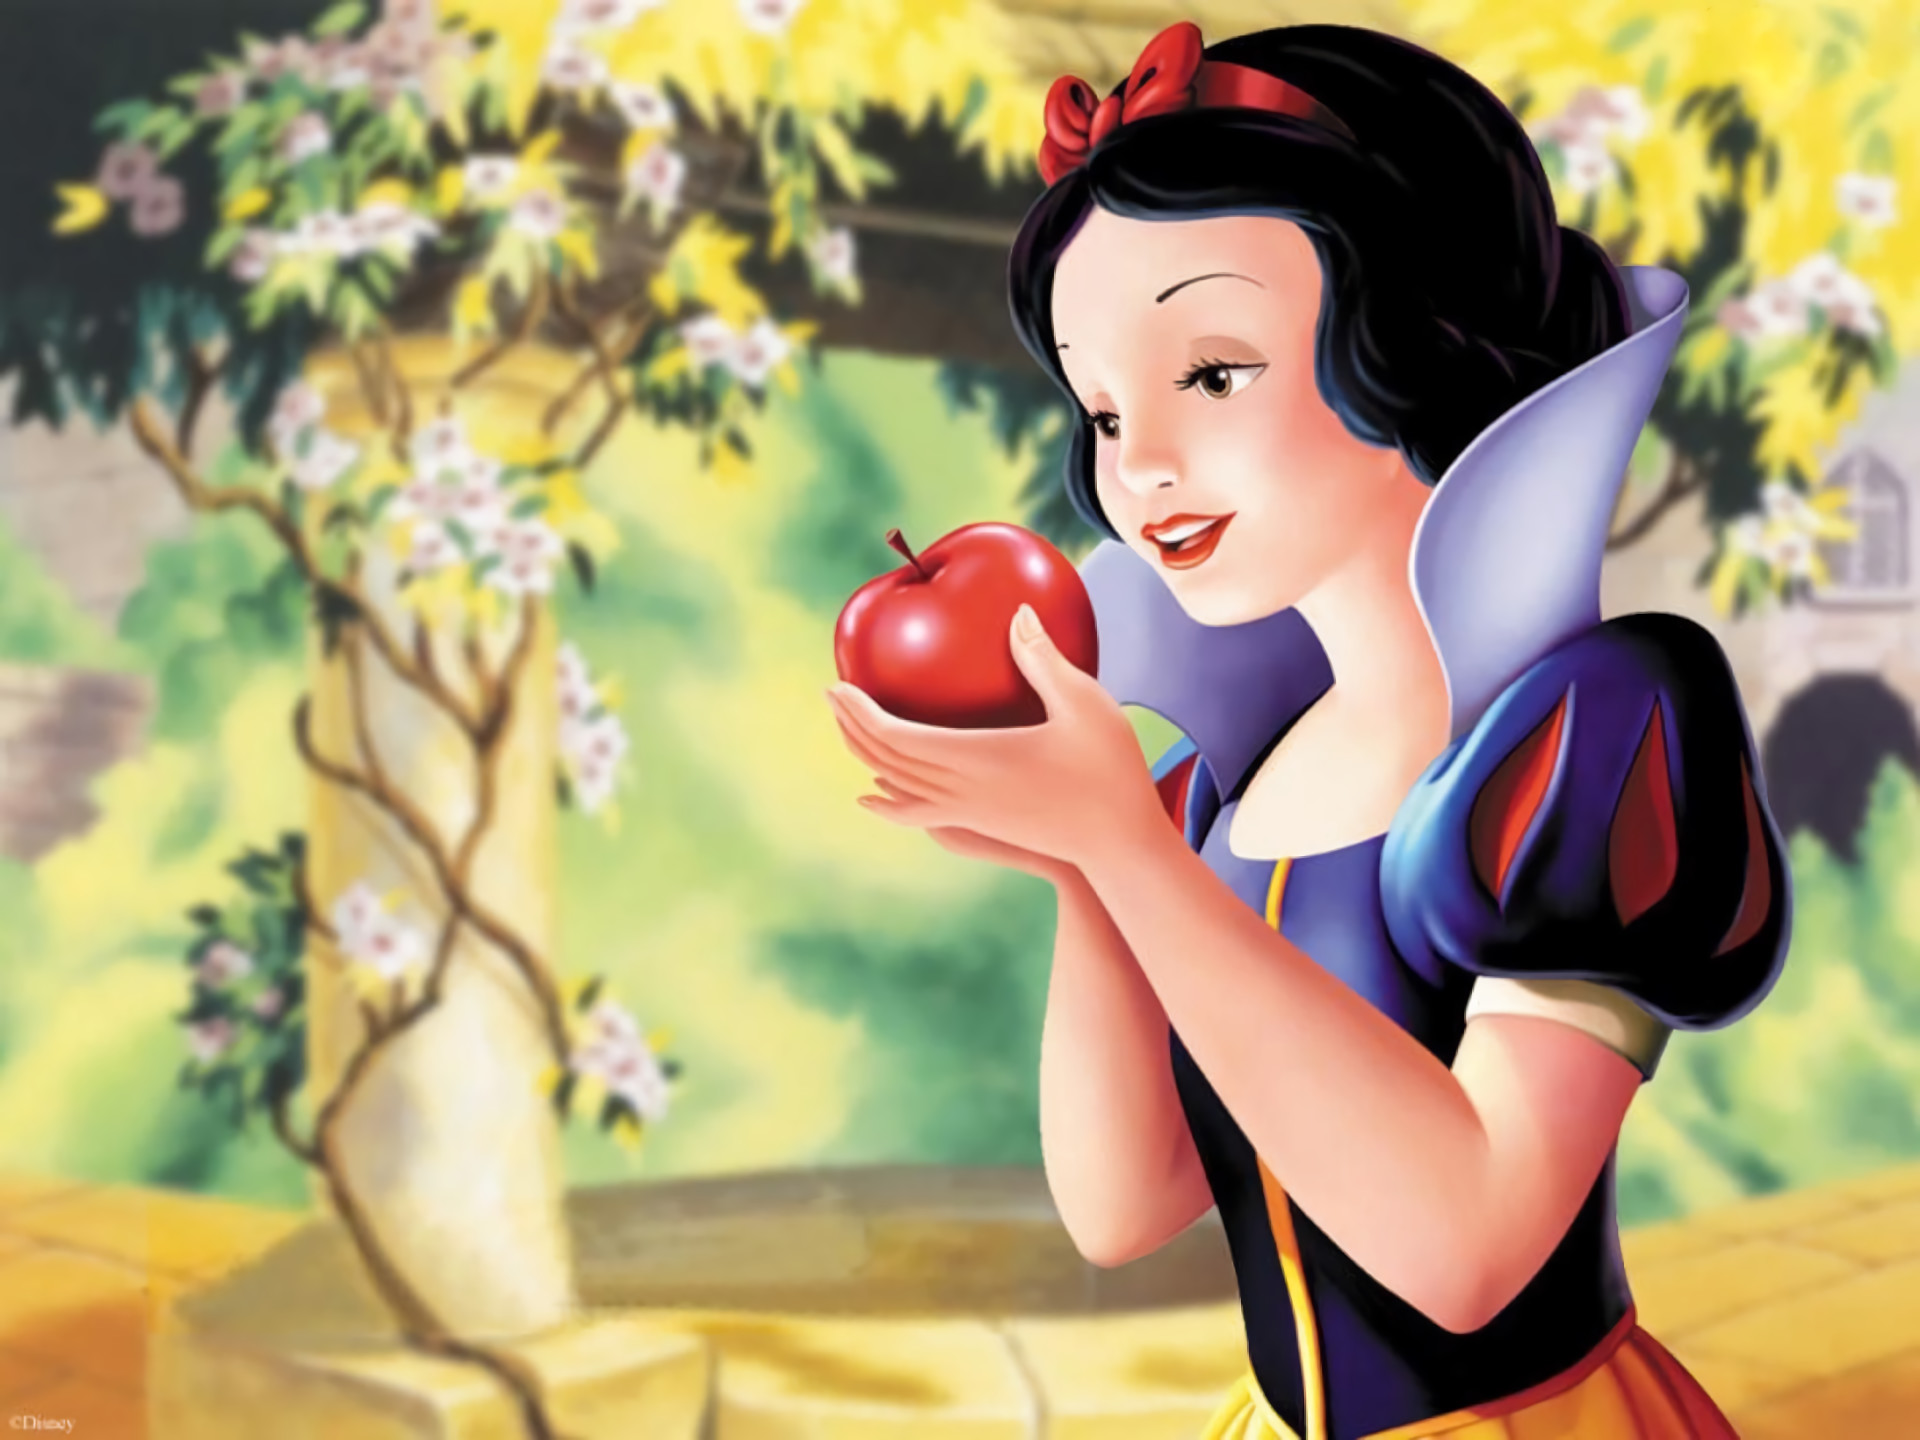 Snow White Wallpaper - Disney Princess Wallpaper (6474572) - Fanpop